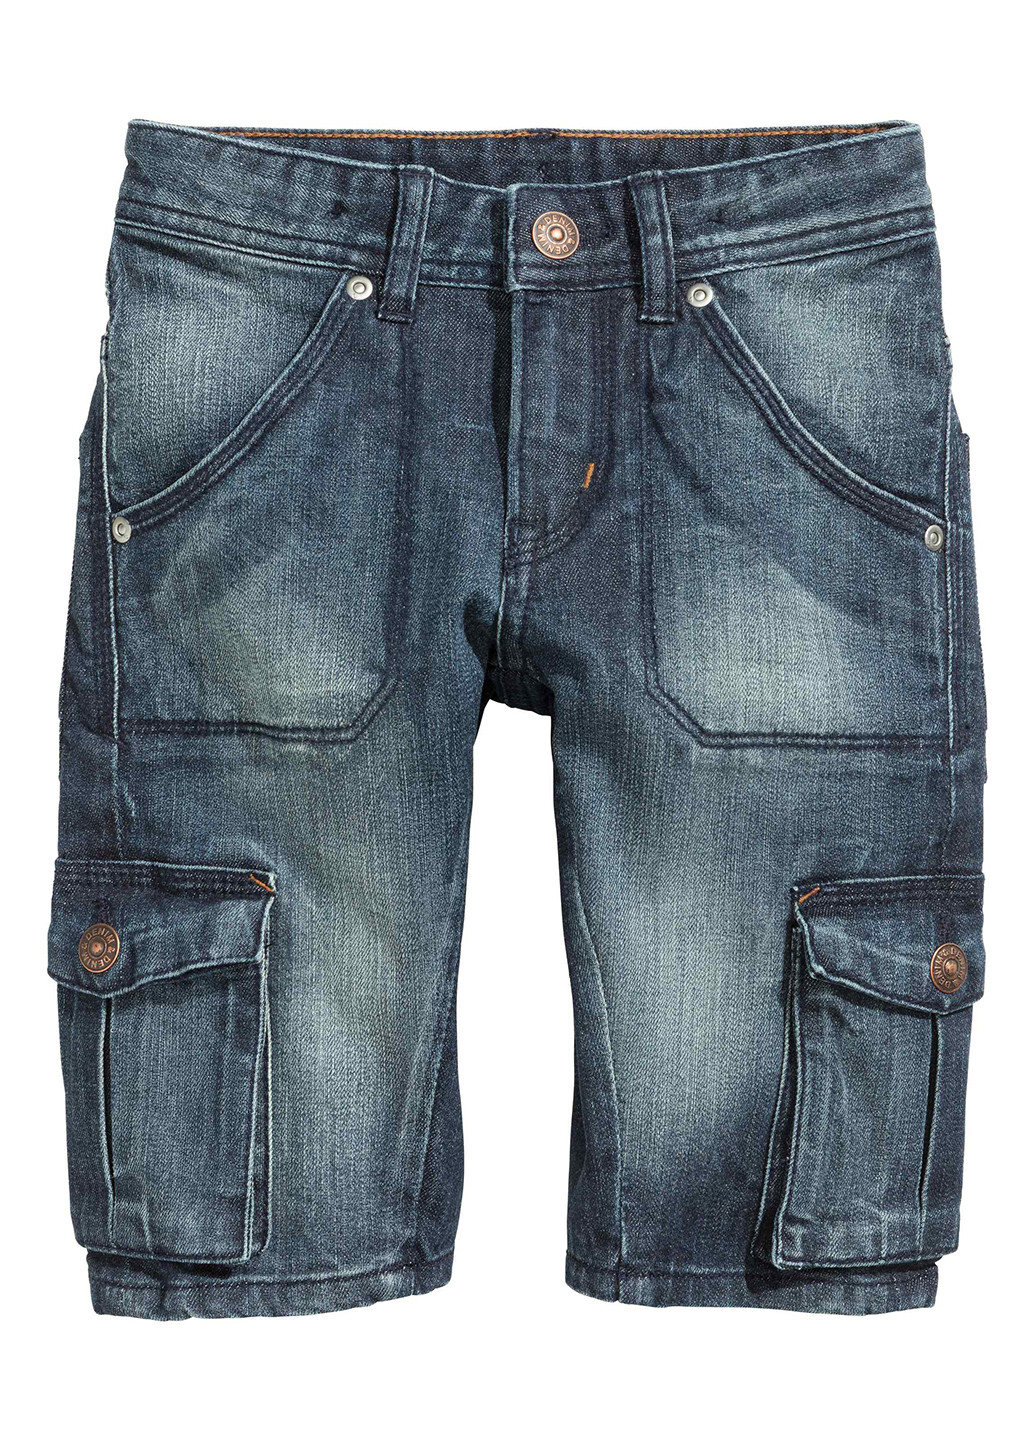 Бриджи H&M средняя талия тёмно-синие джинсовые